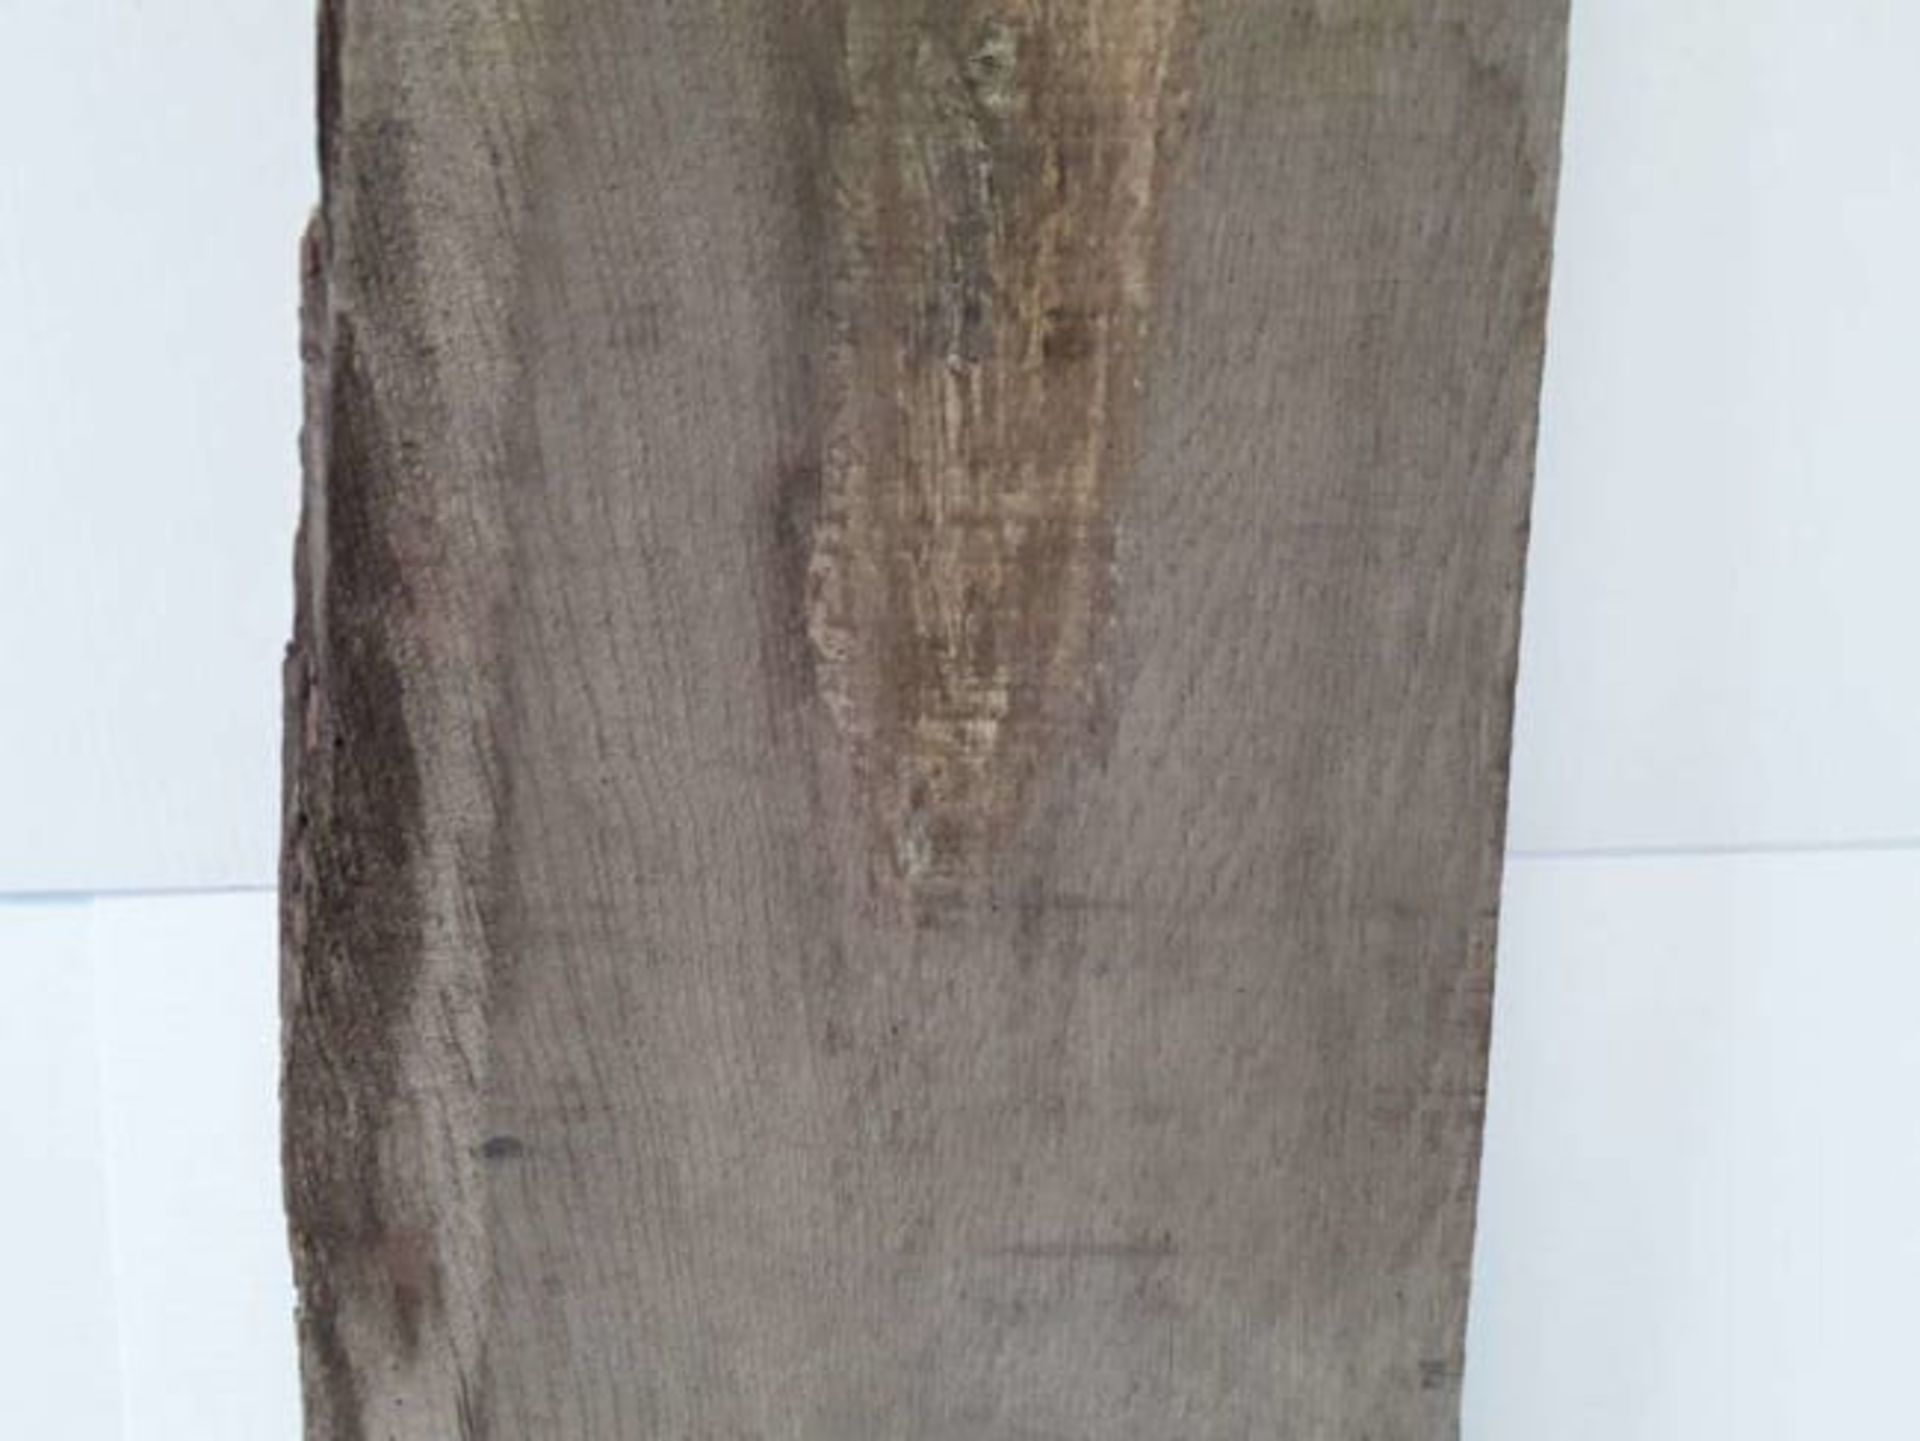 1 x Hardwood Air Dried Sawn English Oak Board / Slab Offcut - Image 2 of 3